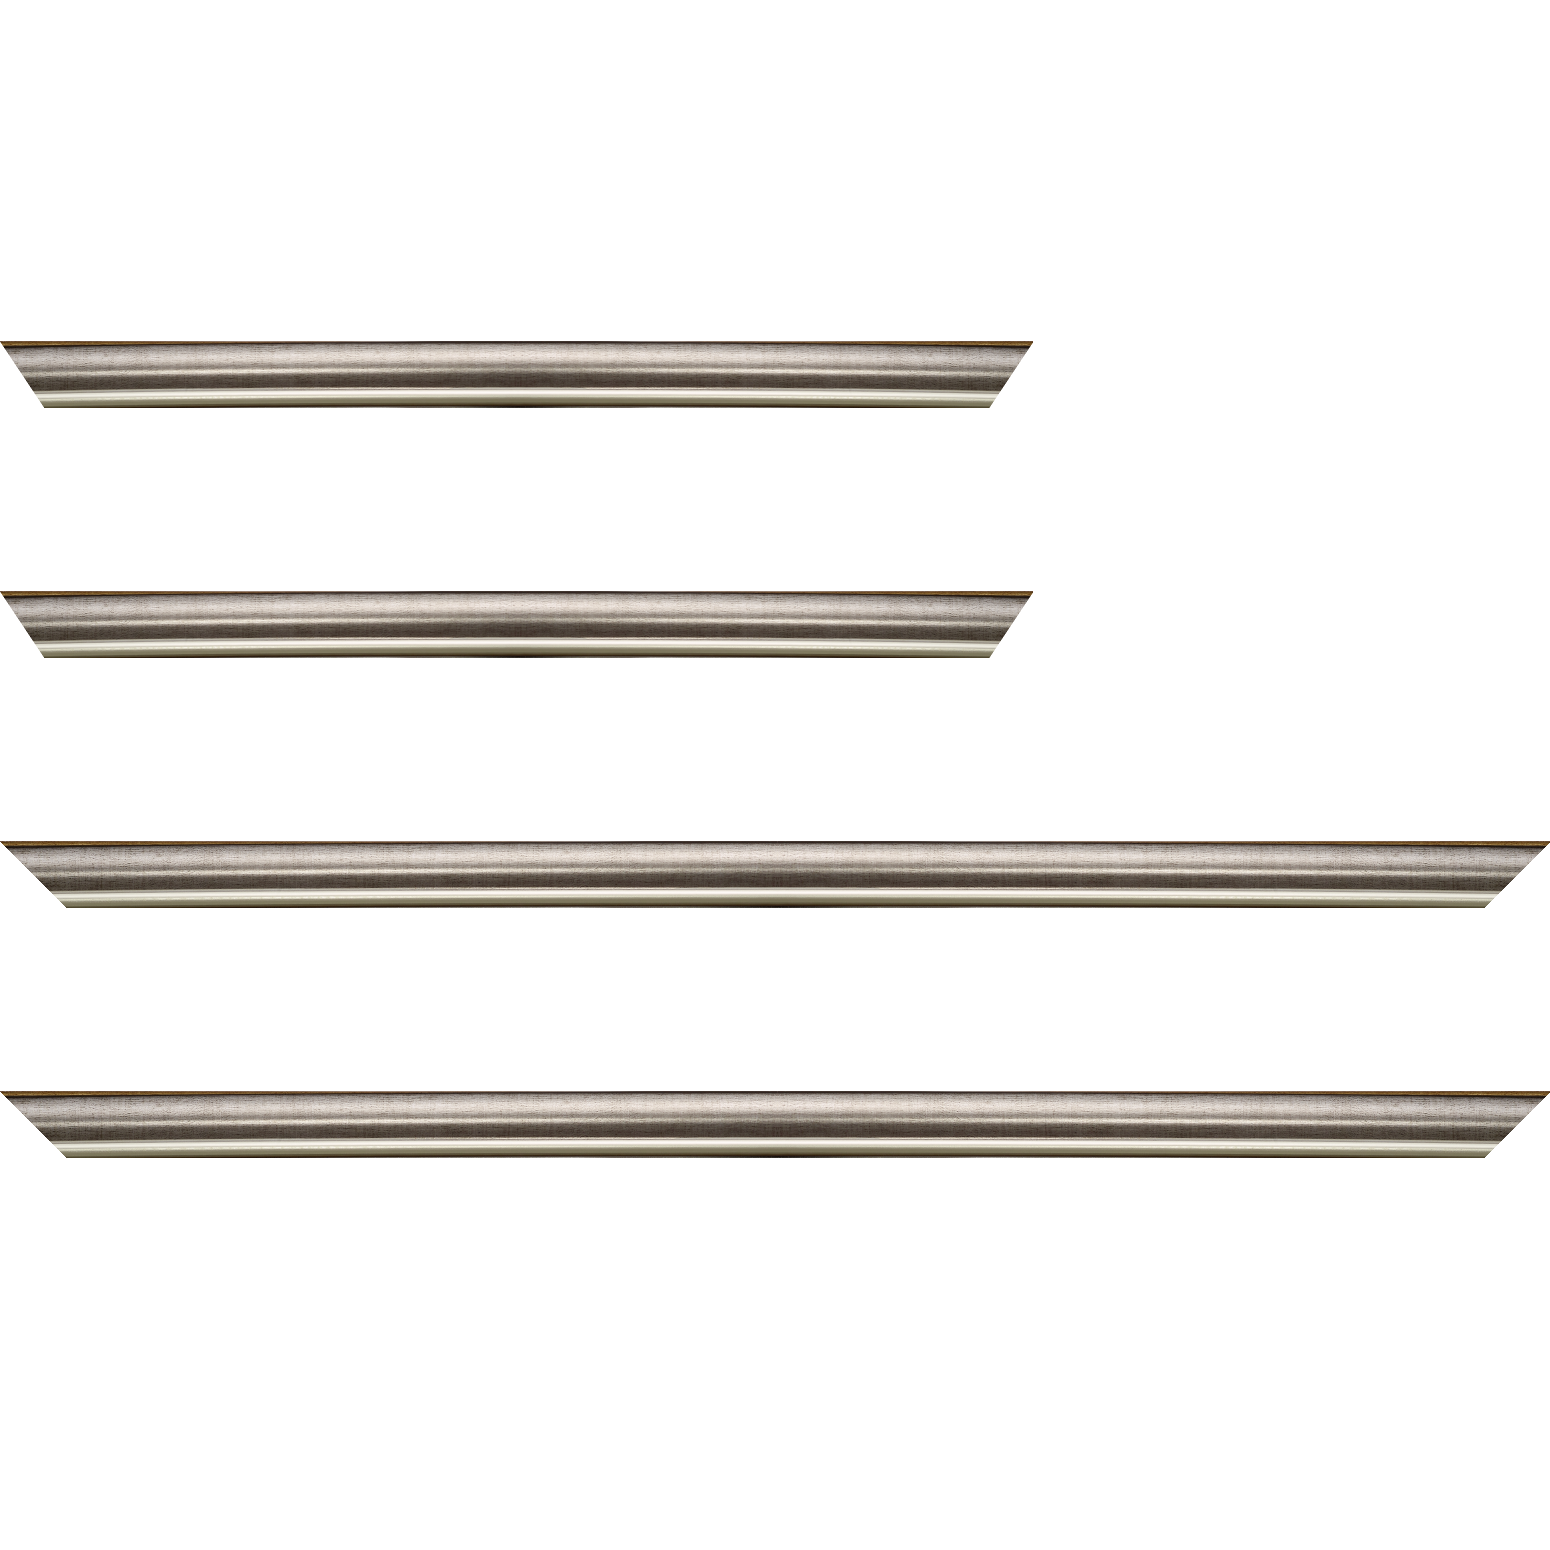 Baguette bois profil arrondi largeur 2.1cm  couleur plomb filet argent chaud